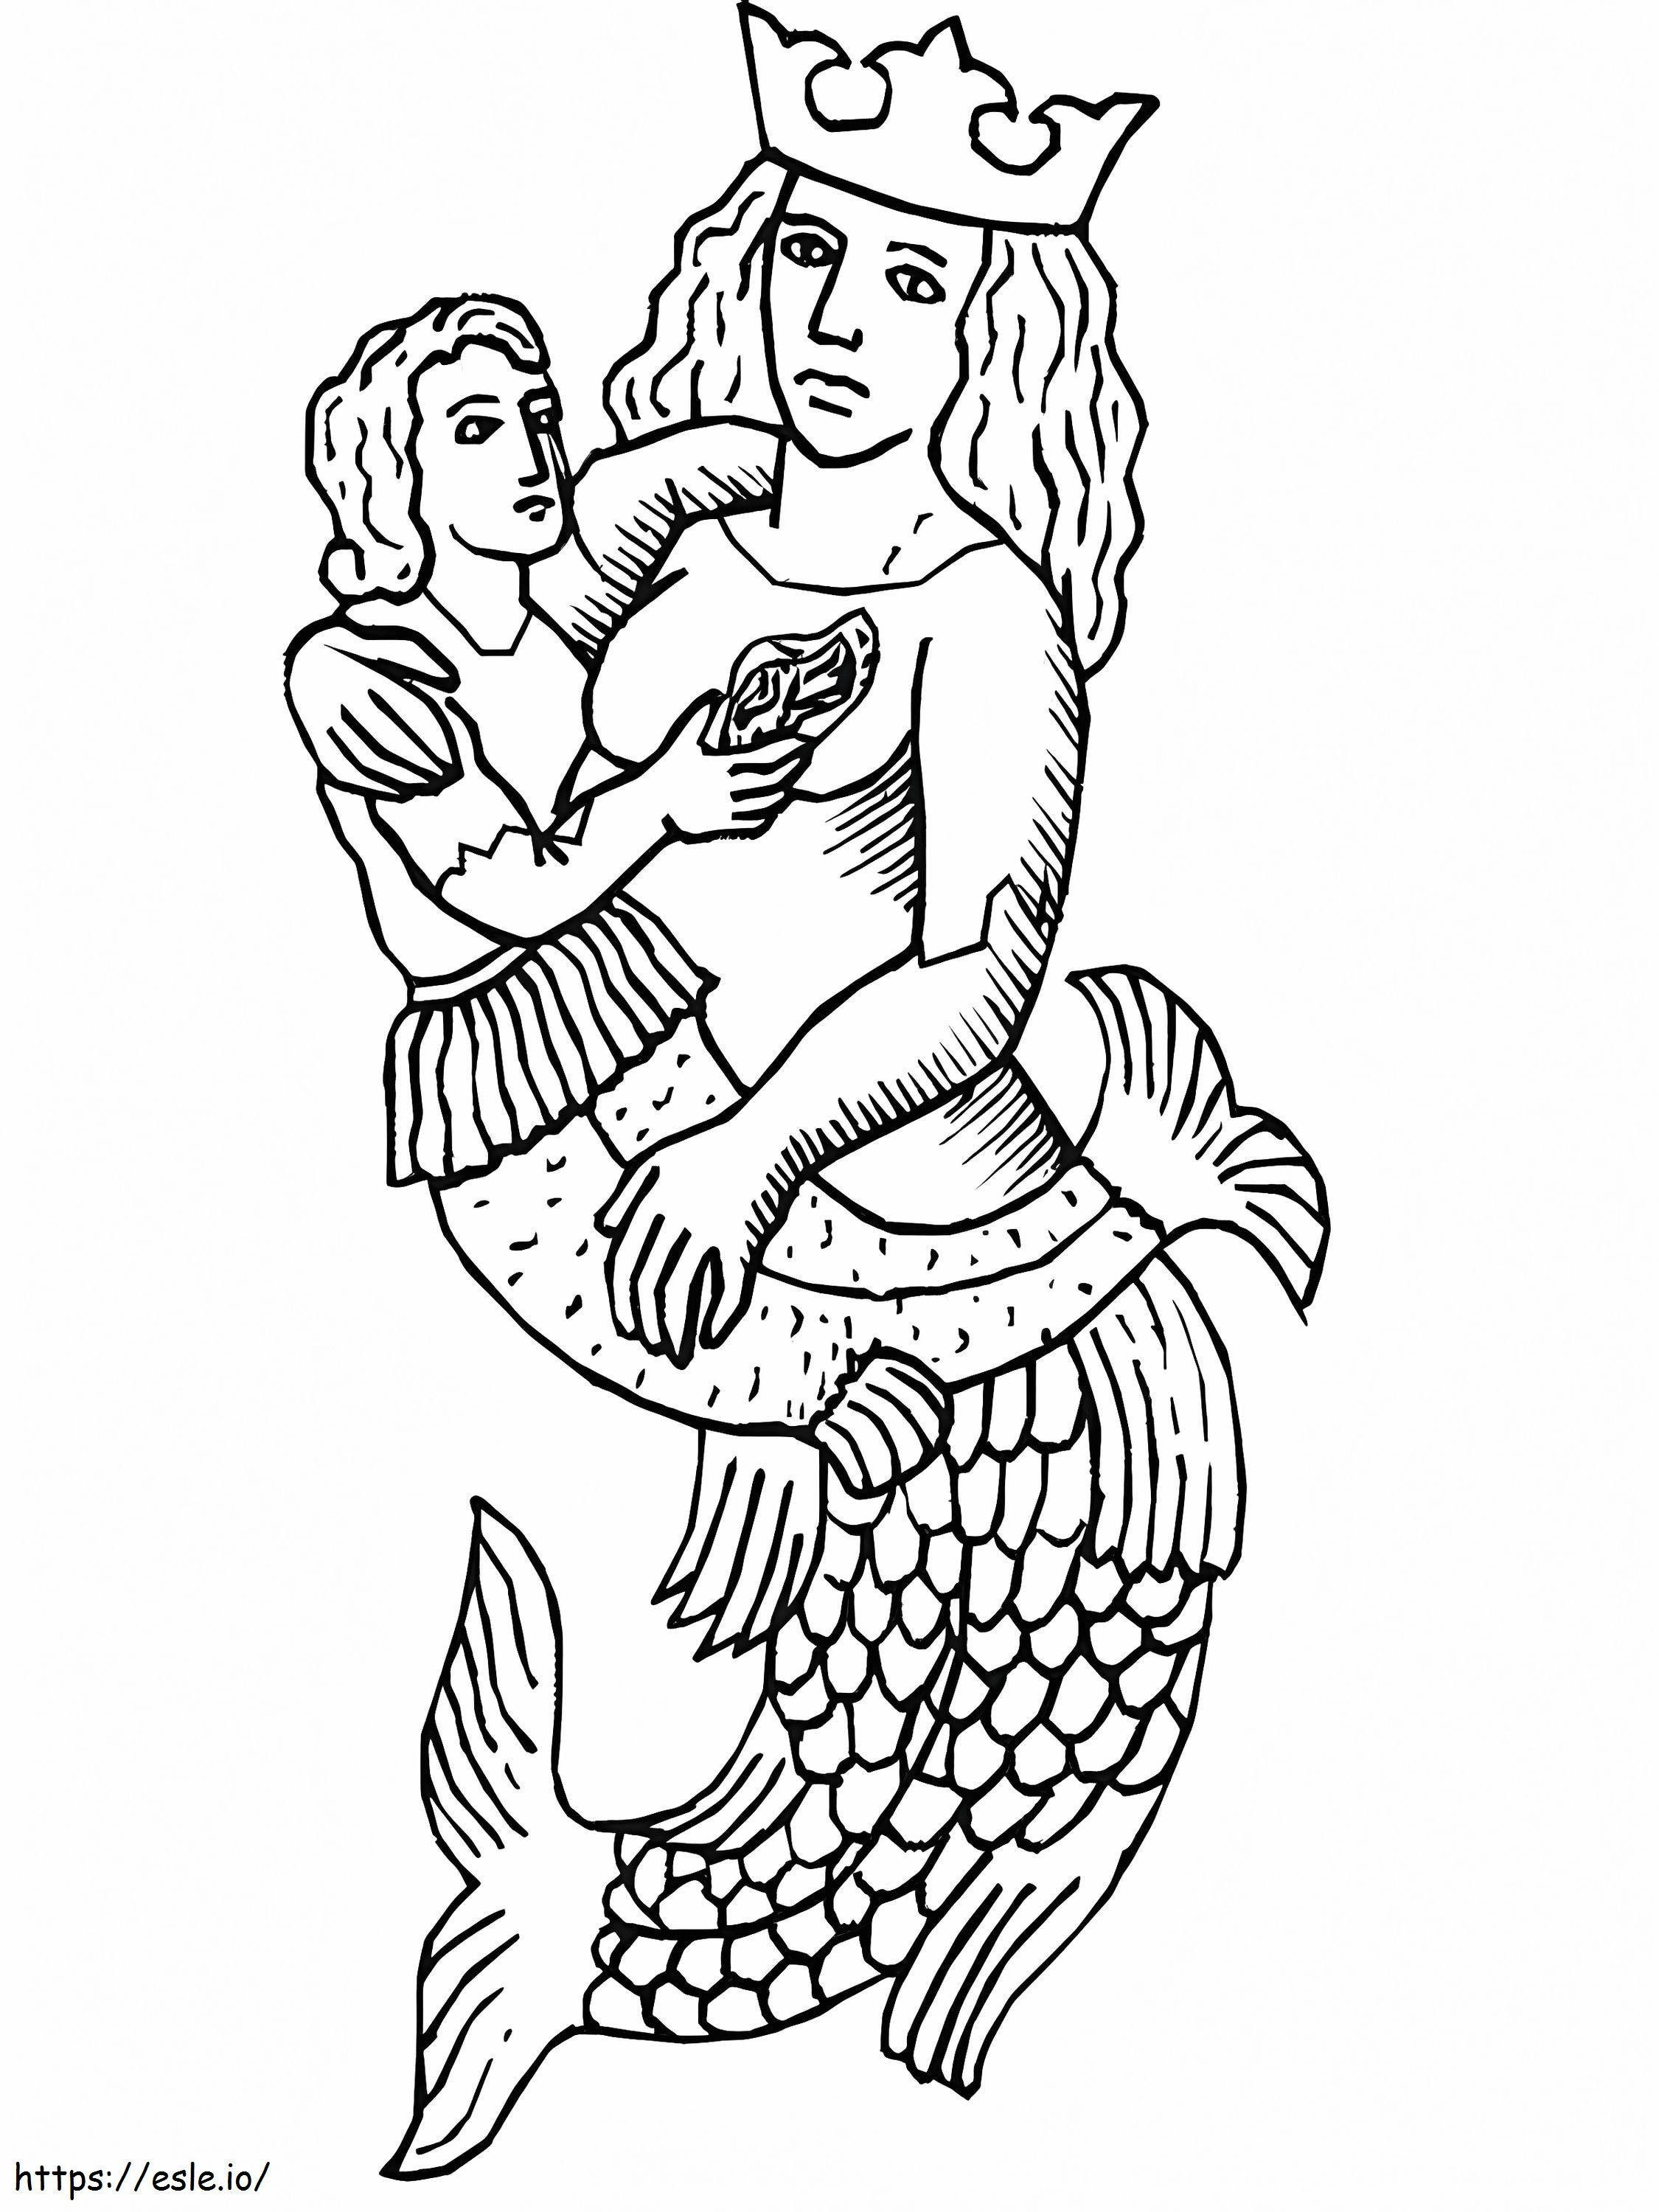 Meerjungfrauen-Statue ausmalbilder